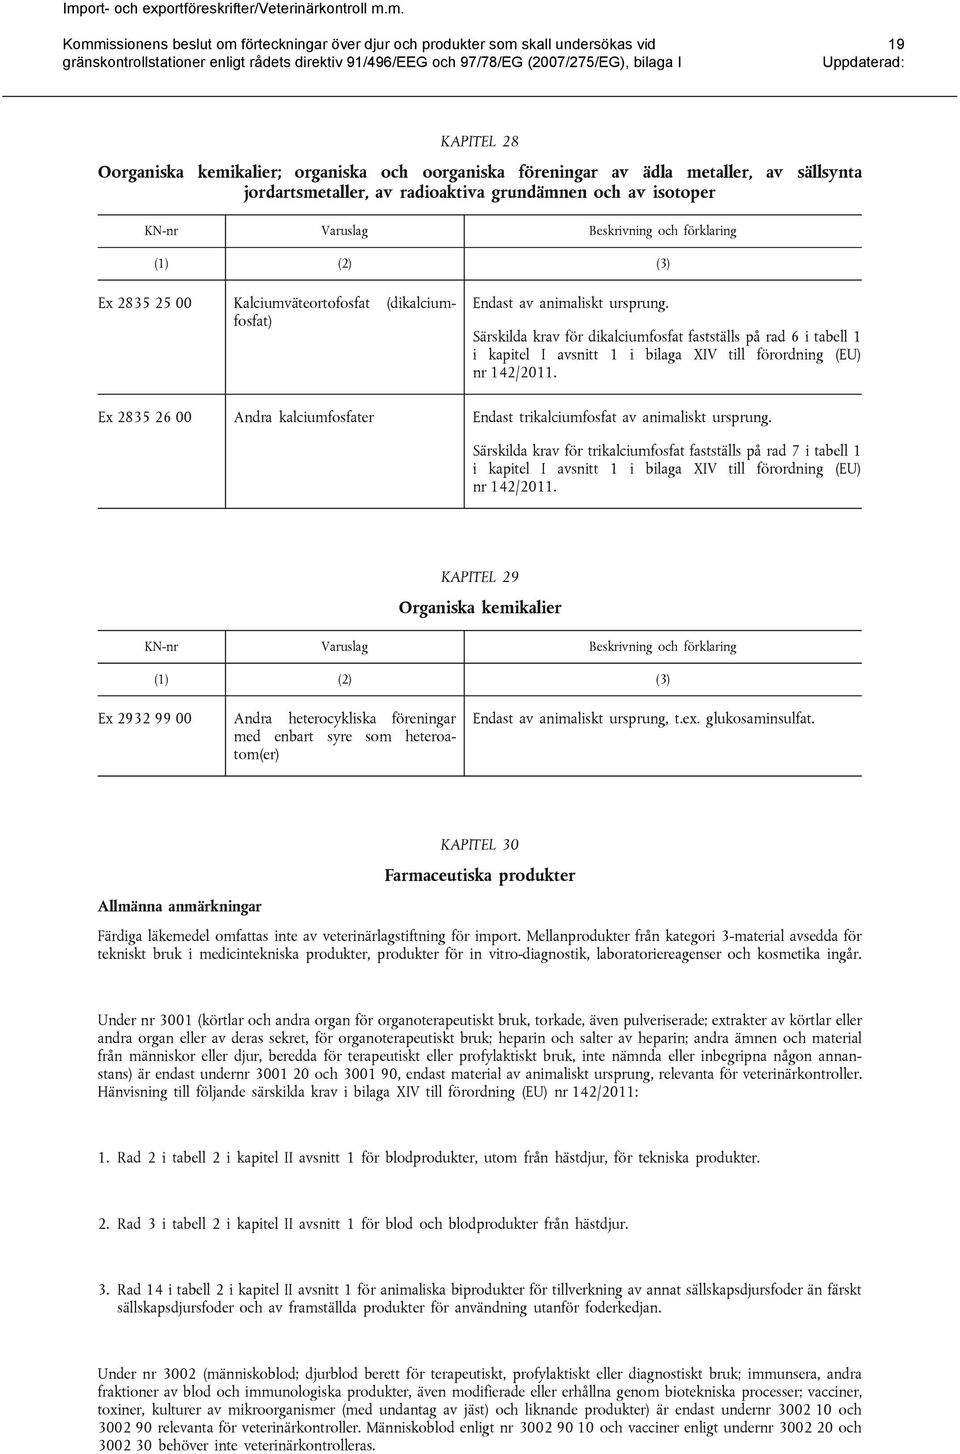 Särskilda krav för dikalciumfosfat fastställs på rad 6 i tabell 1 i kapitel I avsnitt 1 i bilaga XIV till förordning (EU) nr 142/2011.